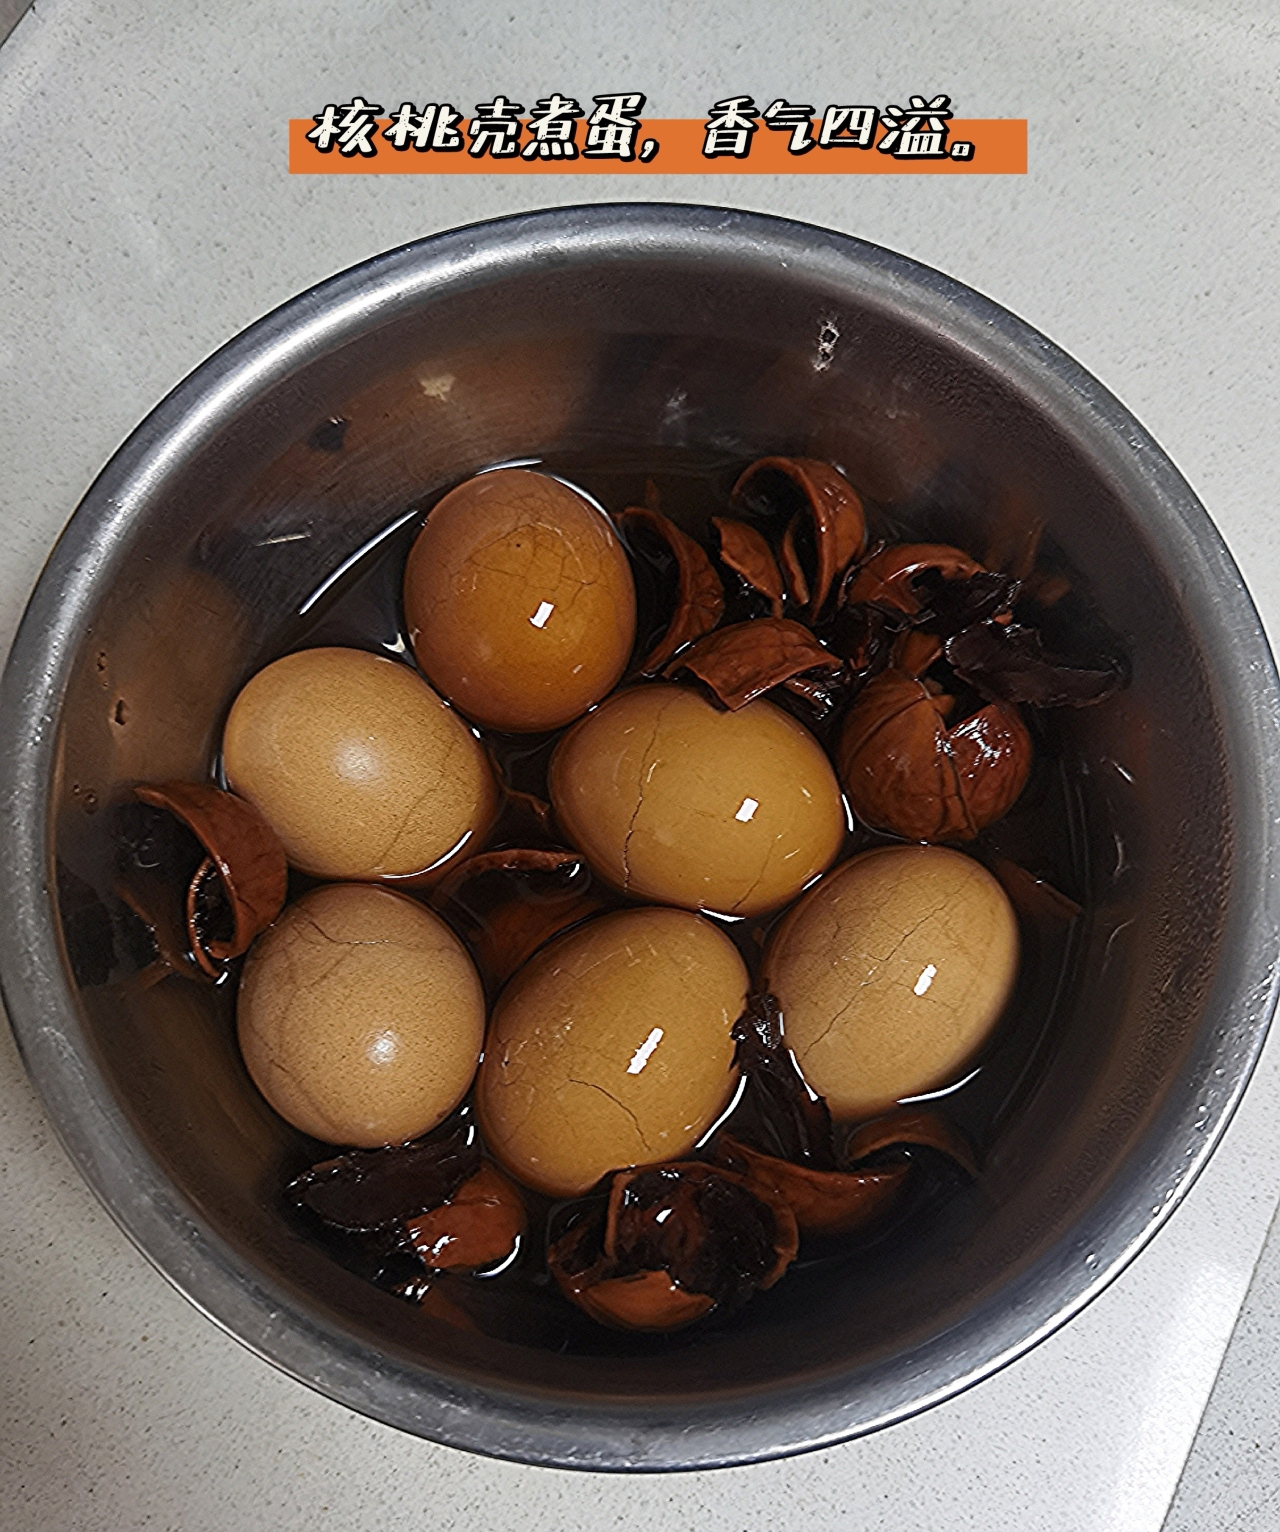 核桃壳煮鸡蛋(补气/健脾/固肾)的做法